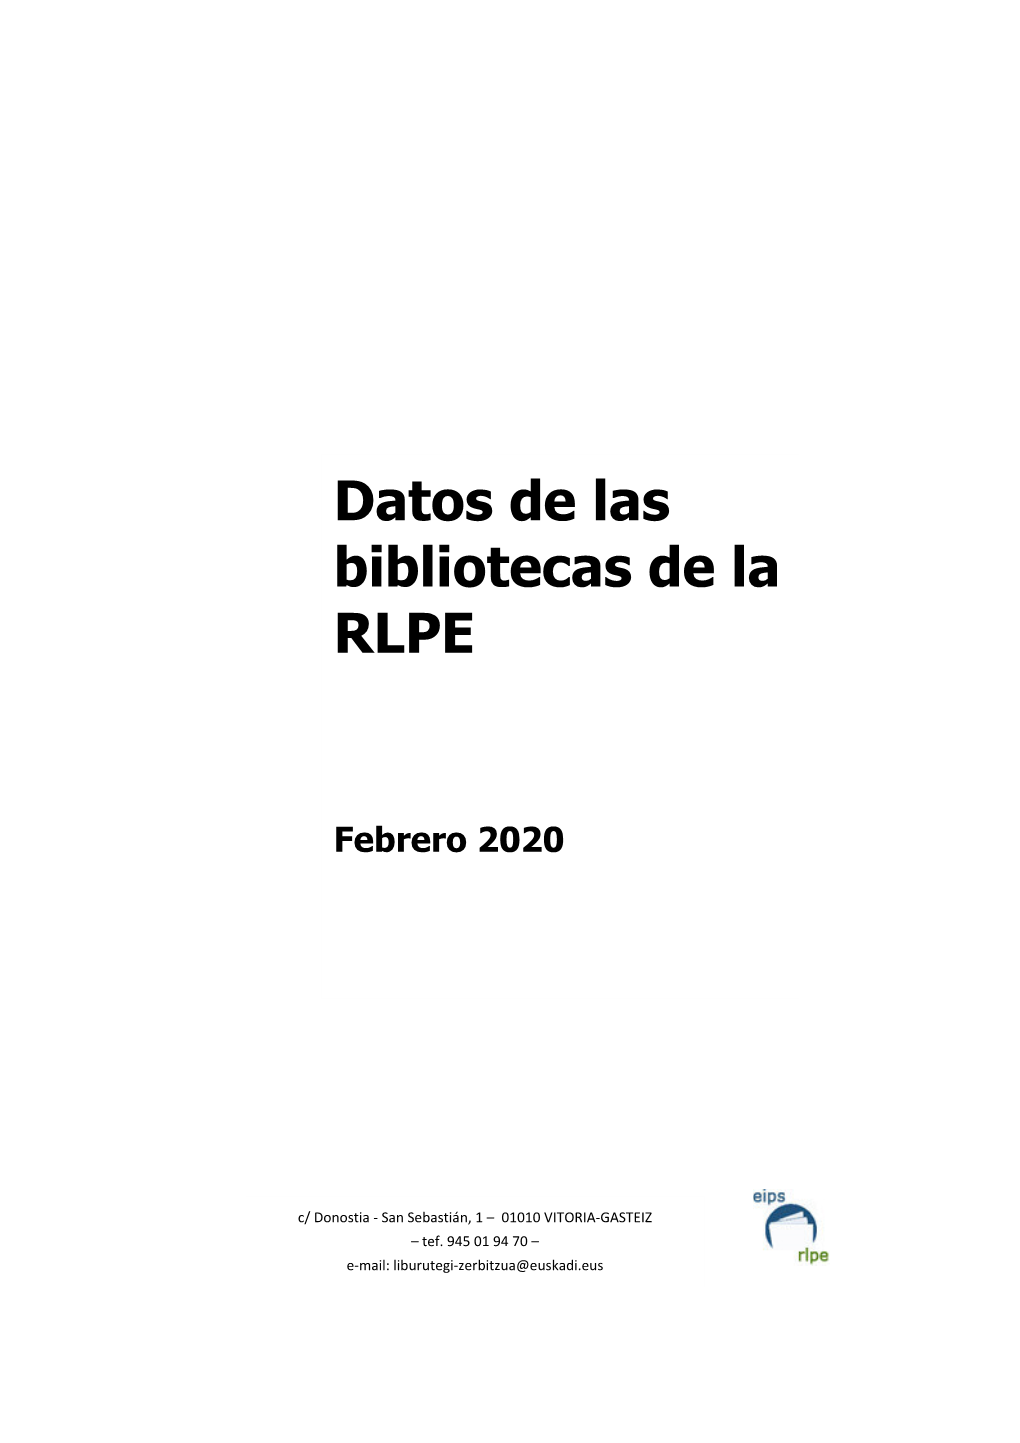 Datos De Las Bibliotecas De La RLPE